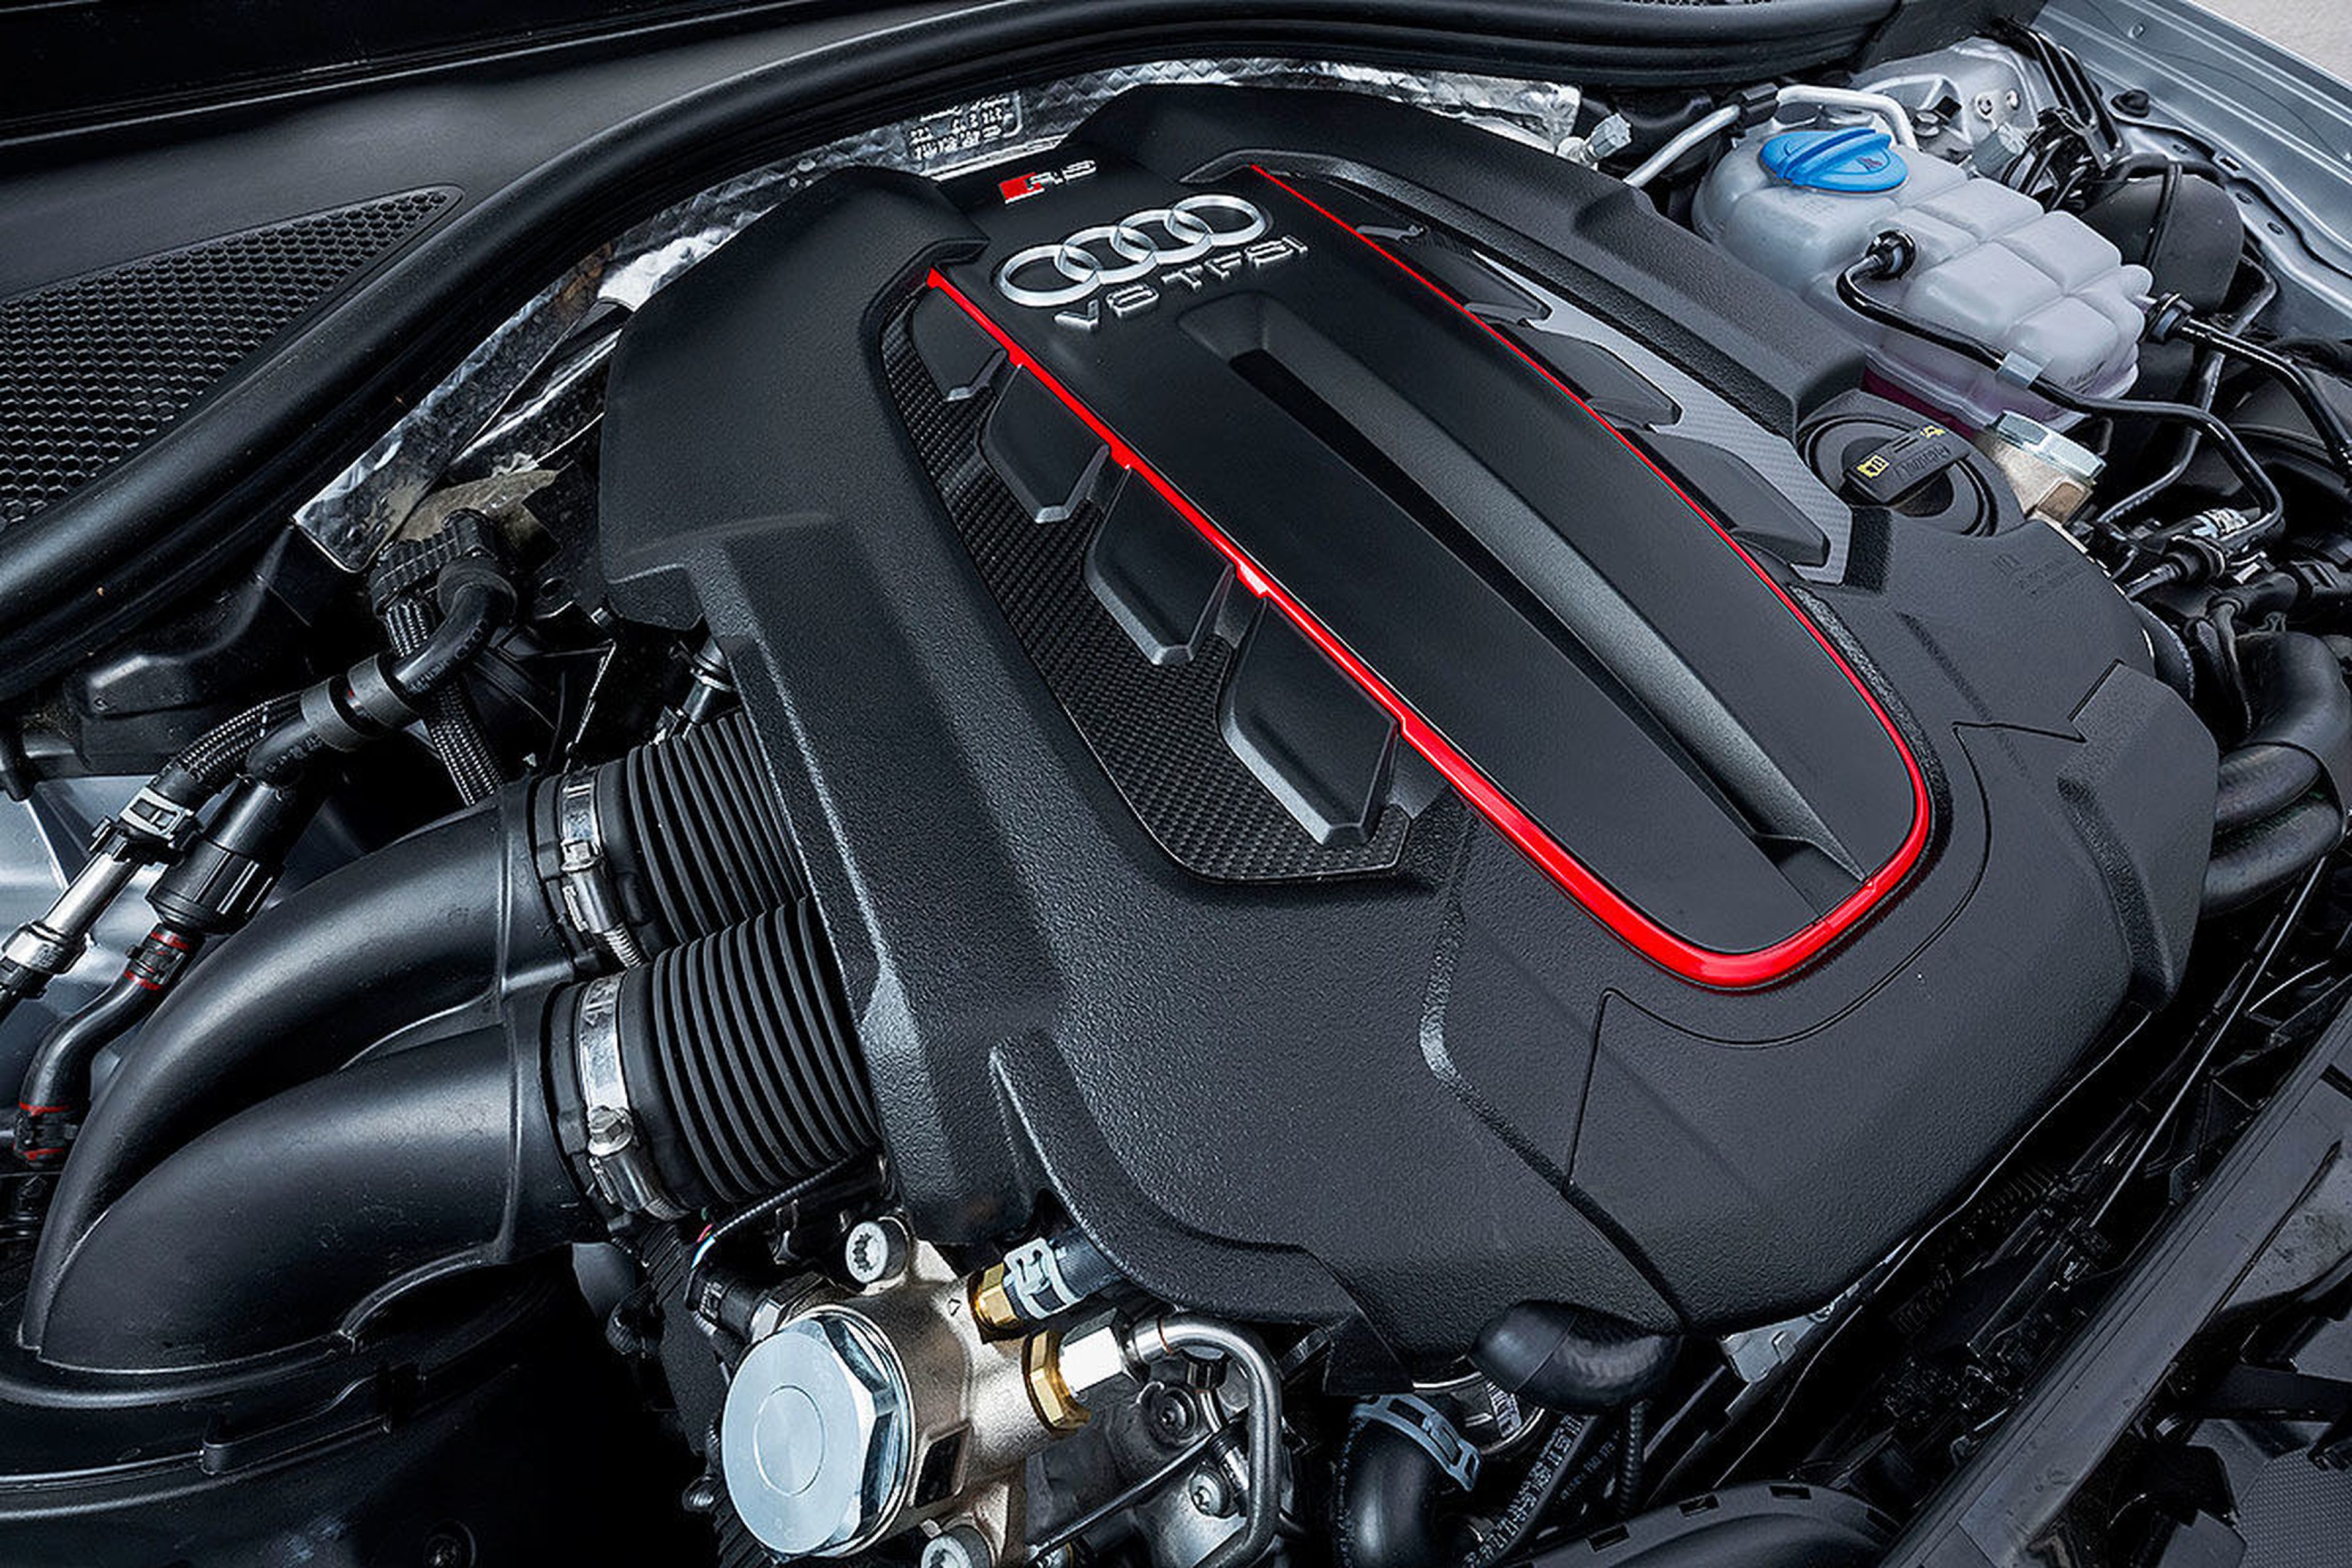 Prueba: Audi RS 6 Avant Performance